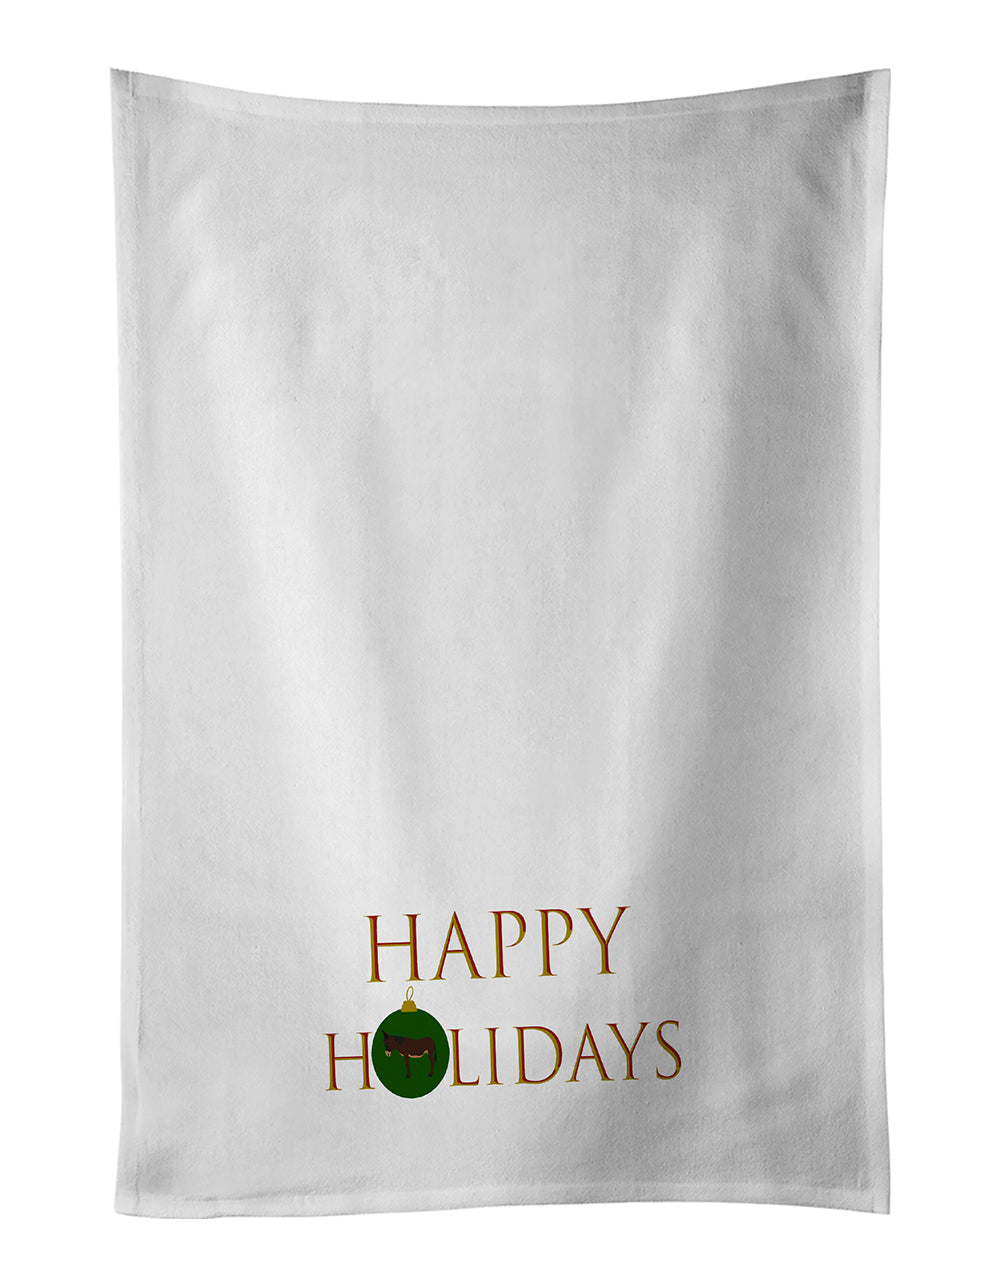 Buy this Donkeys & Mules - Zamorano-Leones Donkey Happy Holidays White Kitchen Towel Set of 2